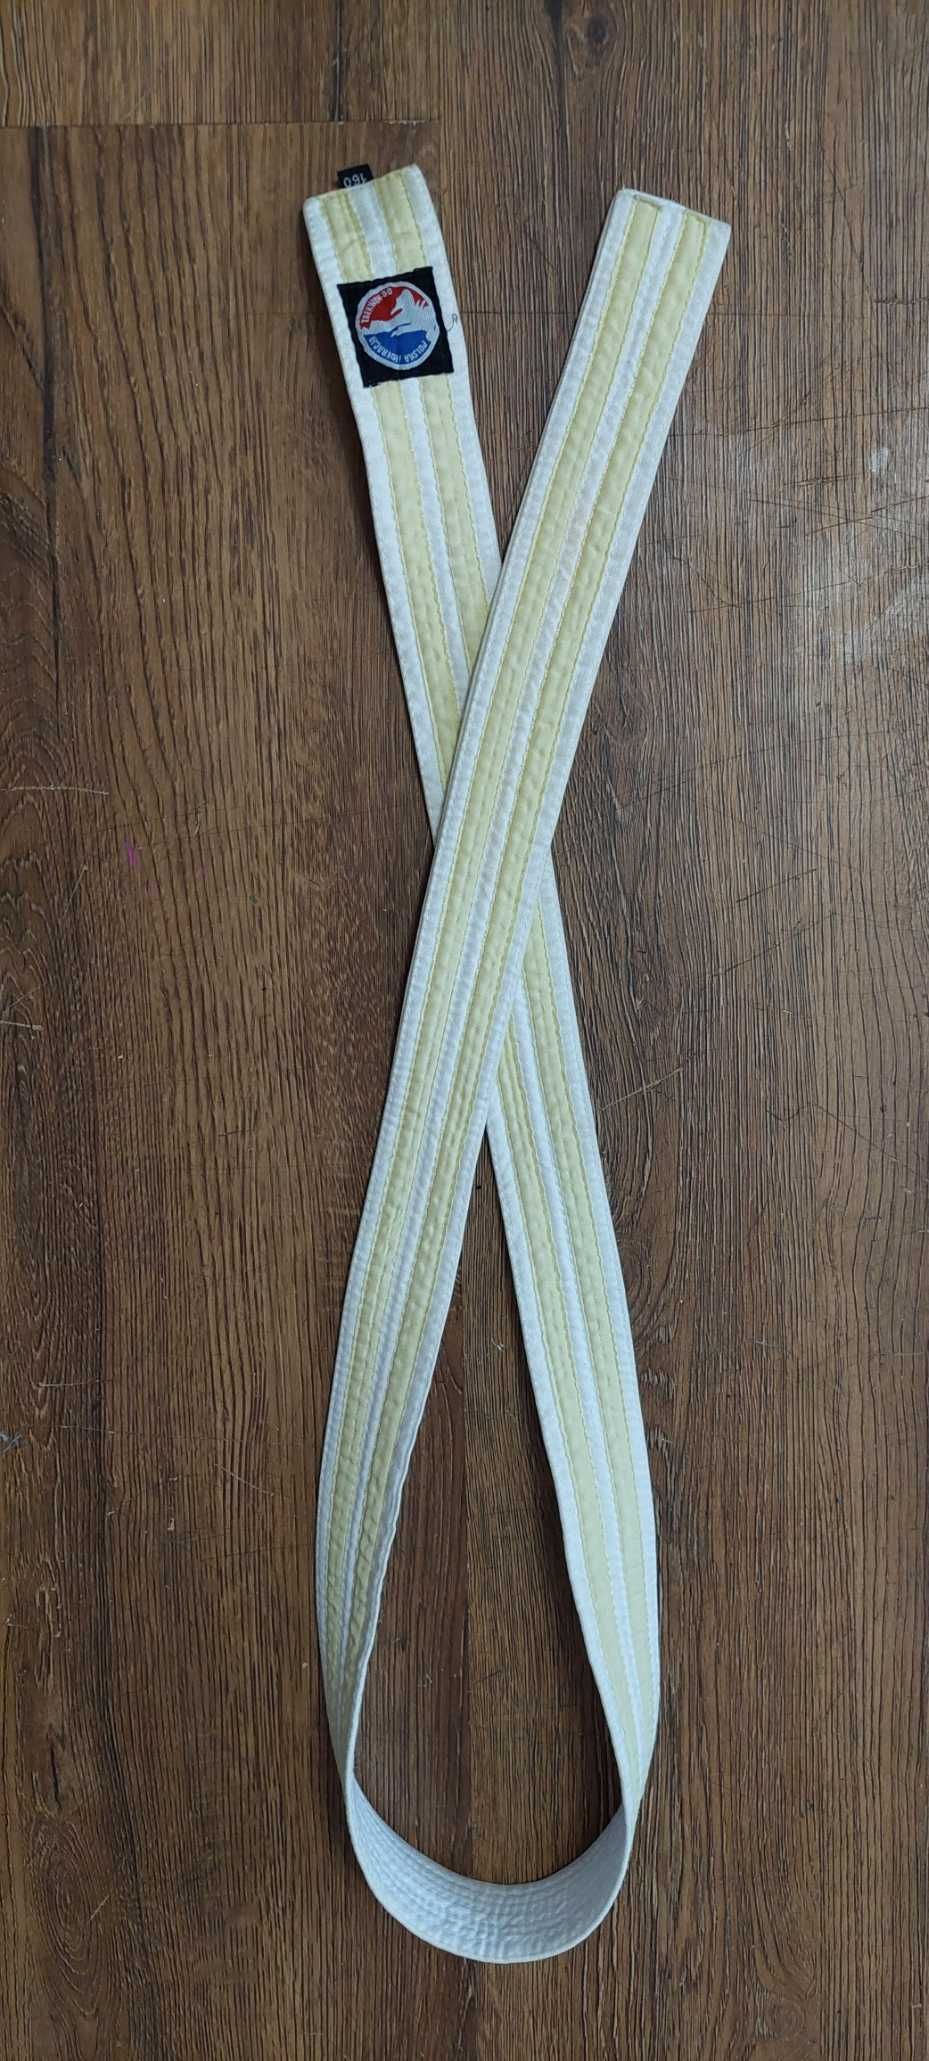 Biały pas z dwiema żółtymi belkami taekwon-do (Ti 13 CUP)